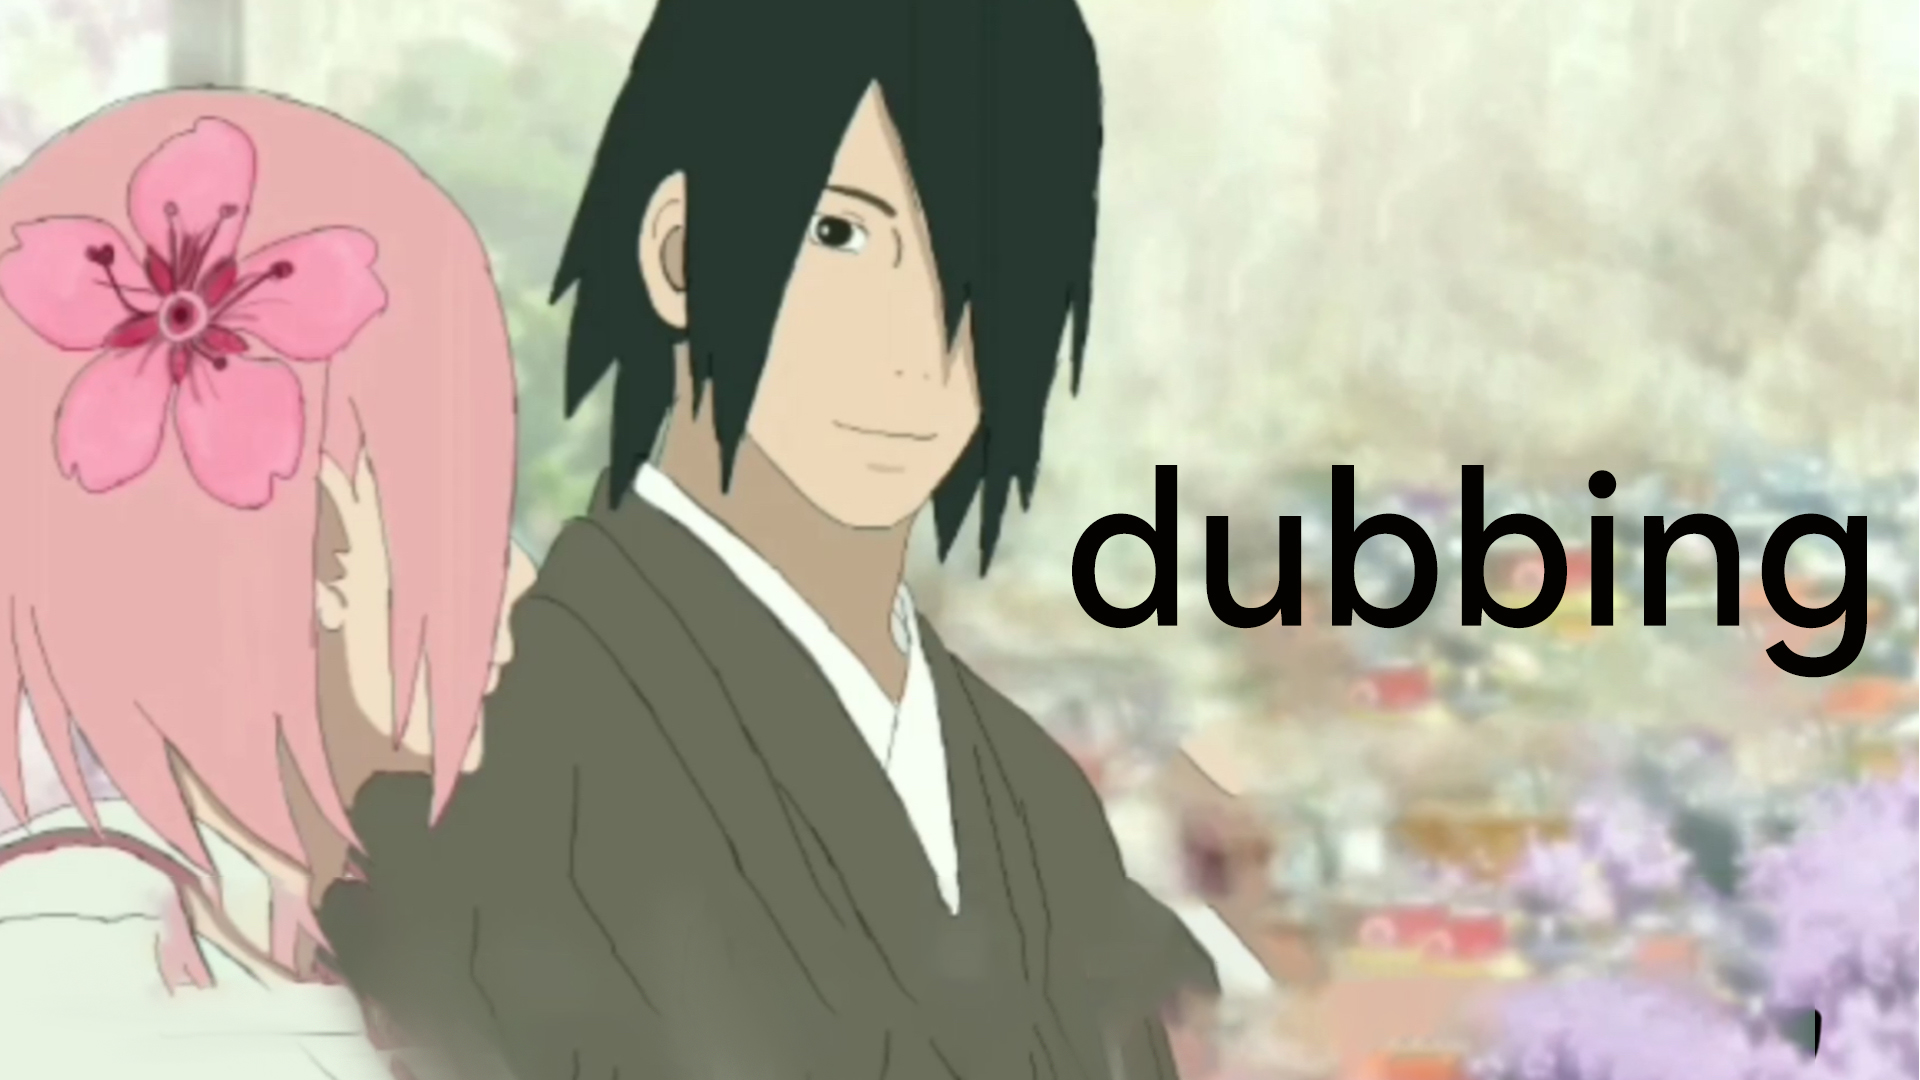 Sasuke and Sakura's wedding - Boruto 